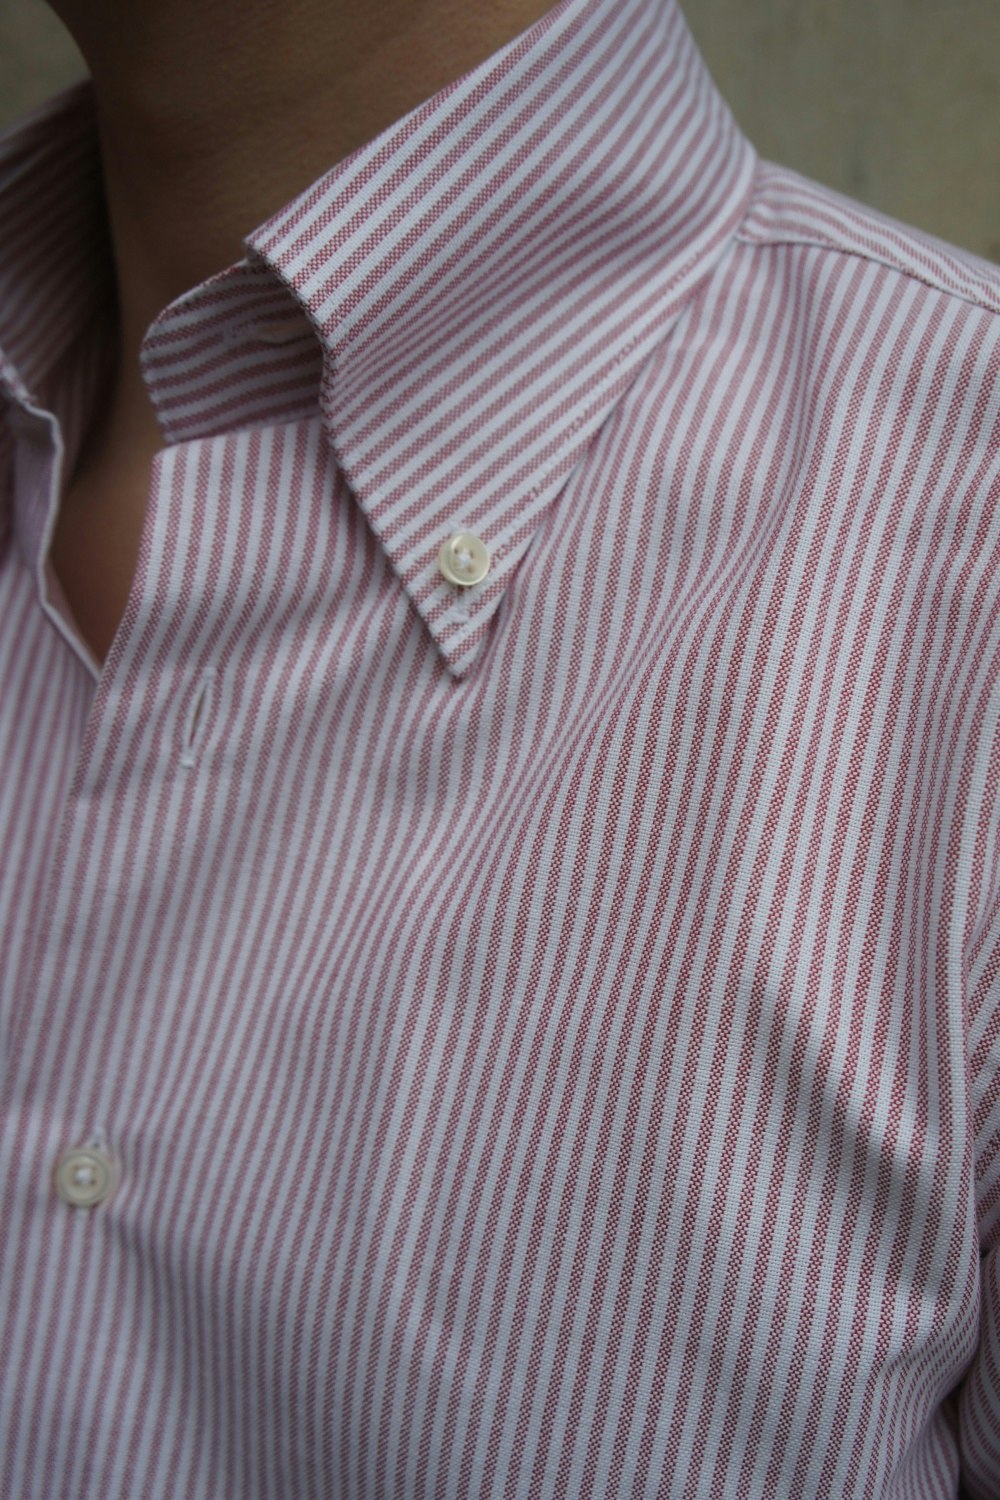 University Stripe Oxford Button Down Shirt - Burgundy/White - Granqvist ...